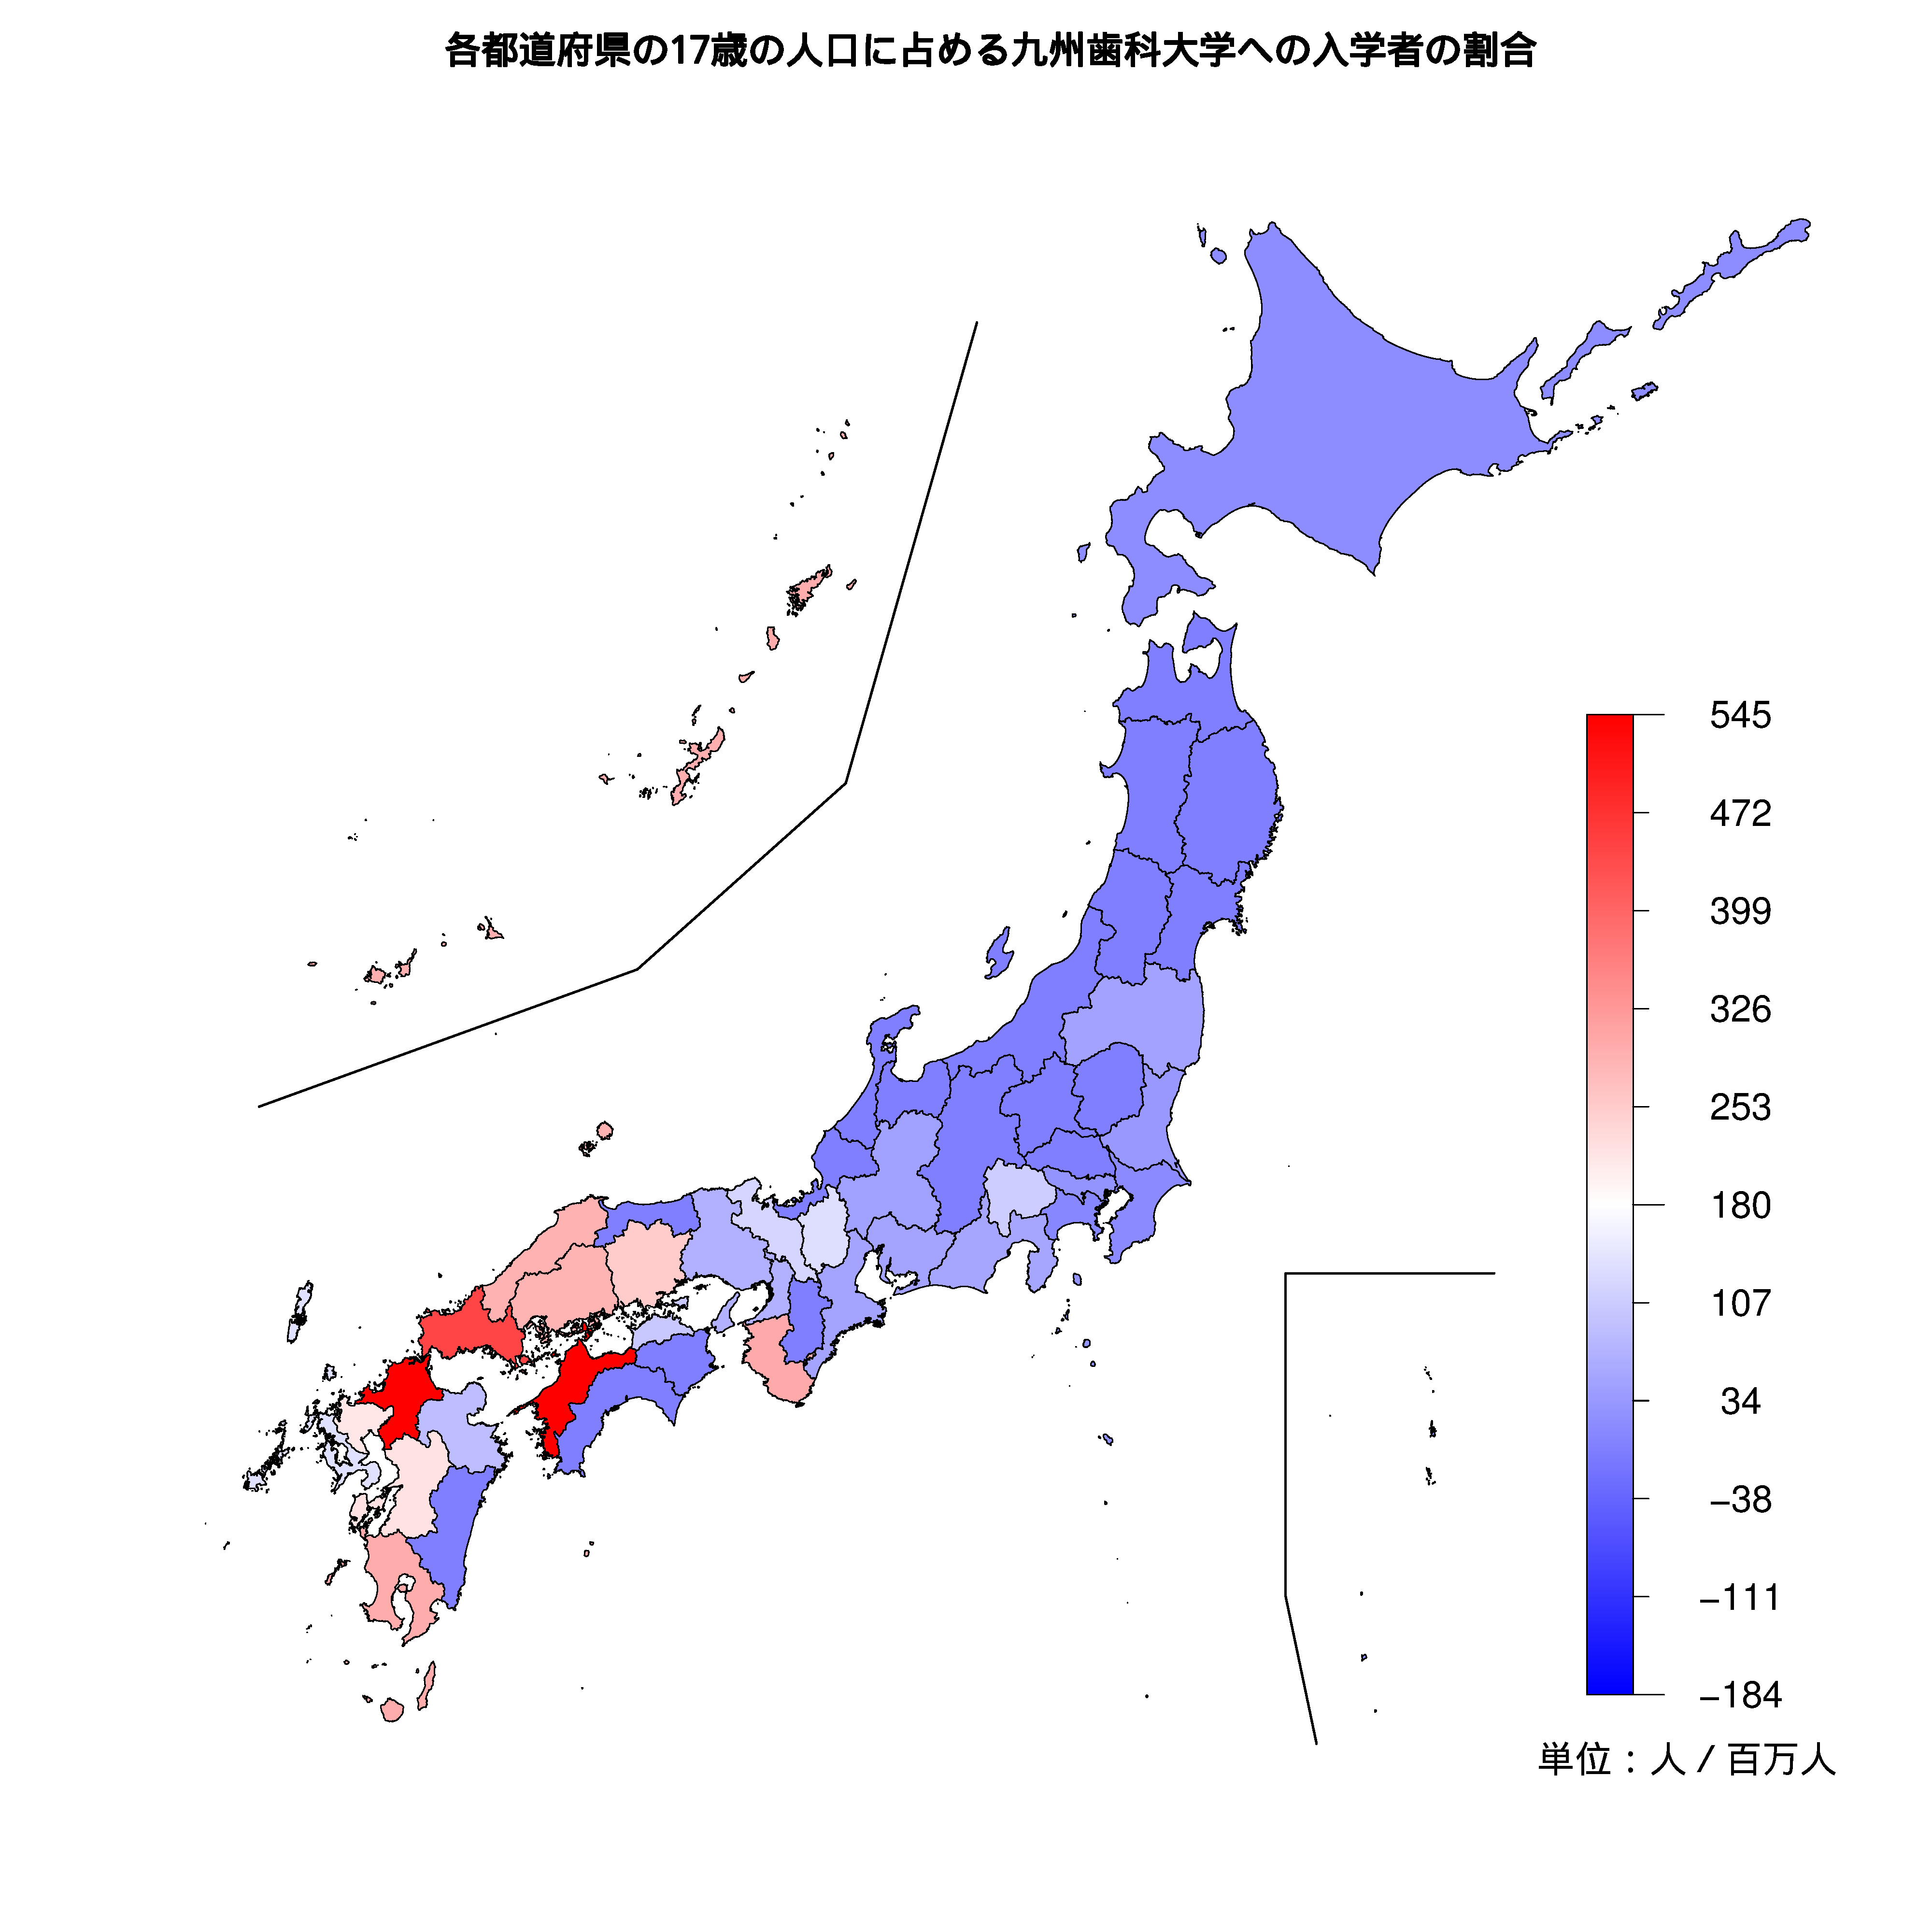 九州歯科大学への入学者が多い都道府県の色分け地図